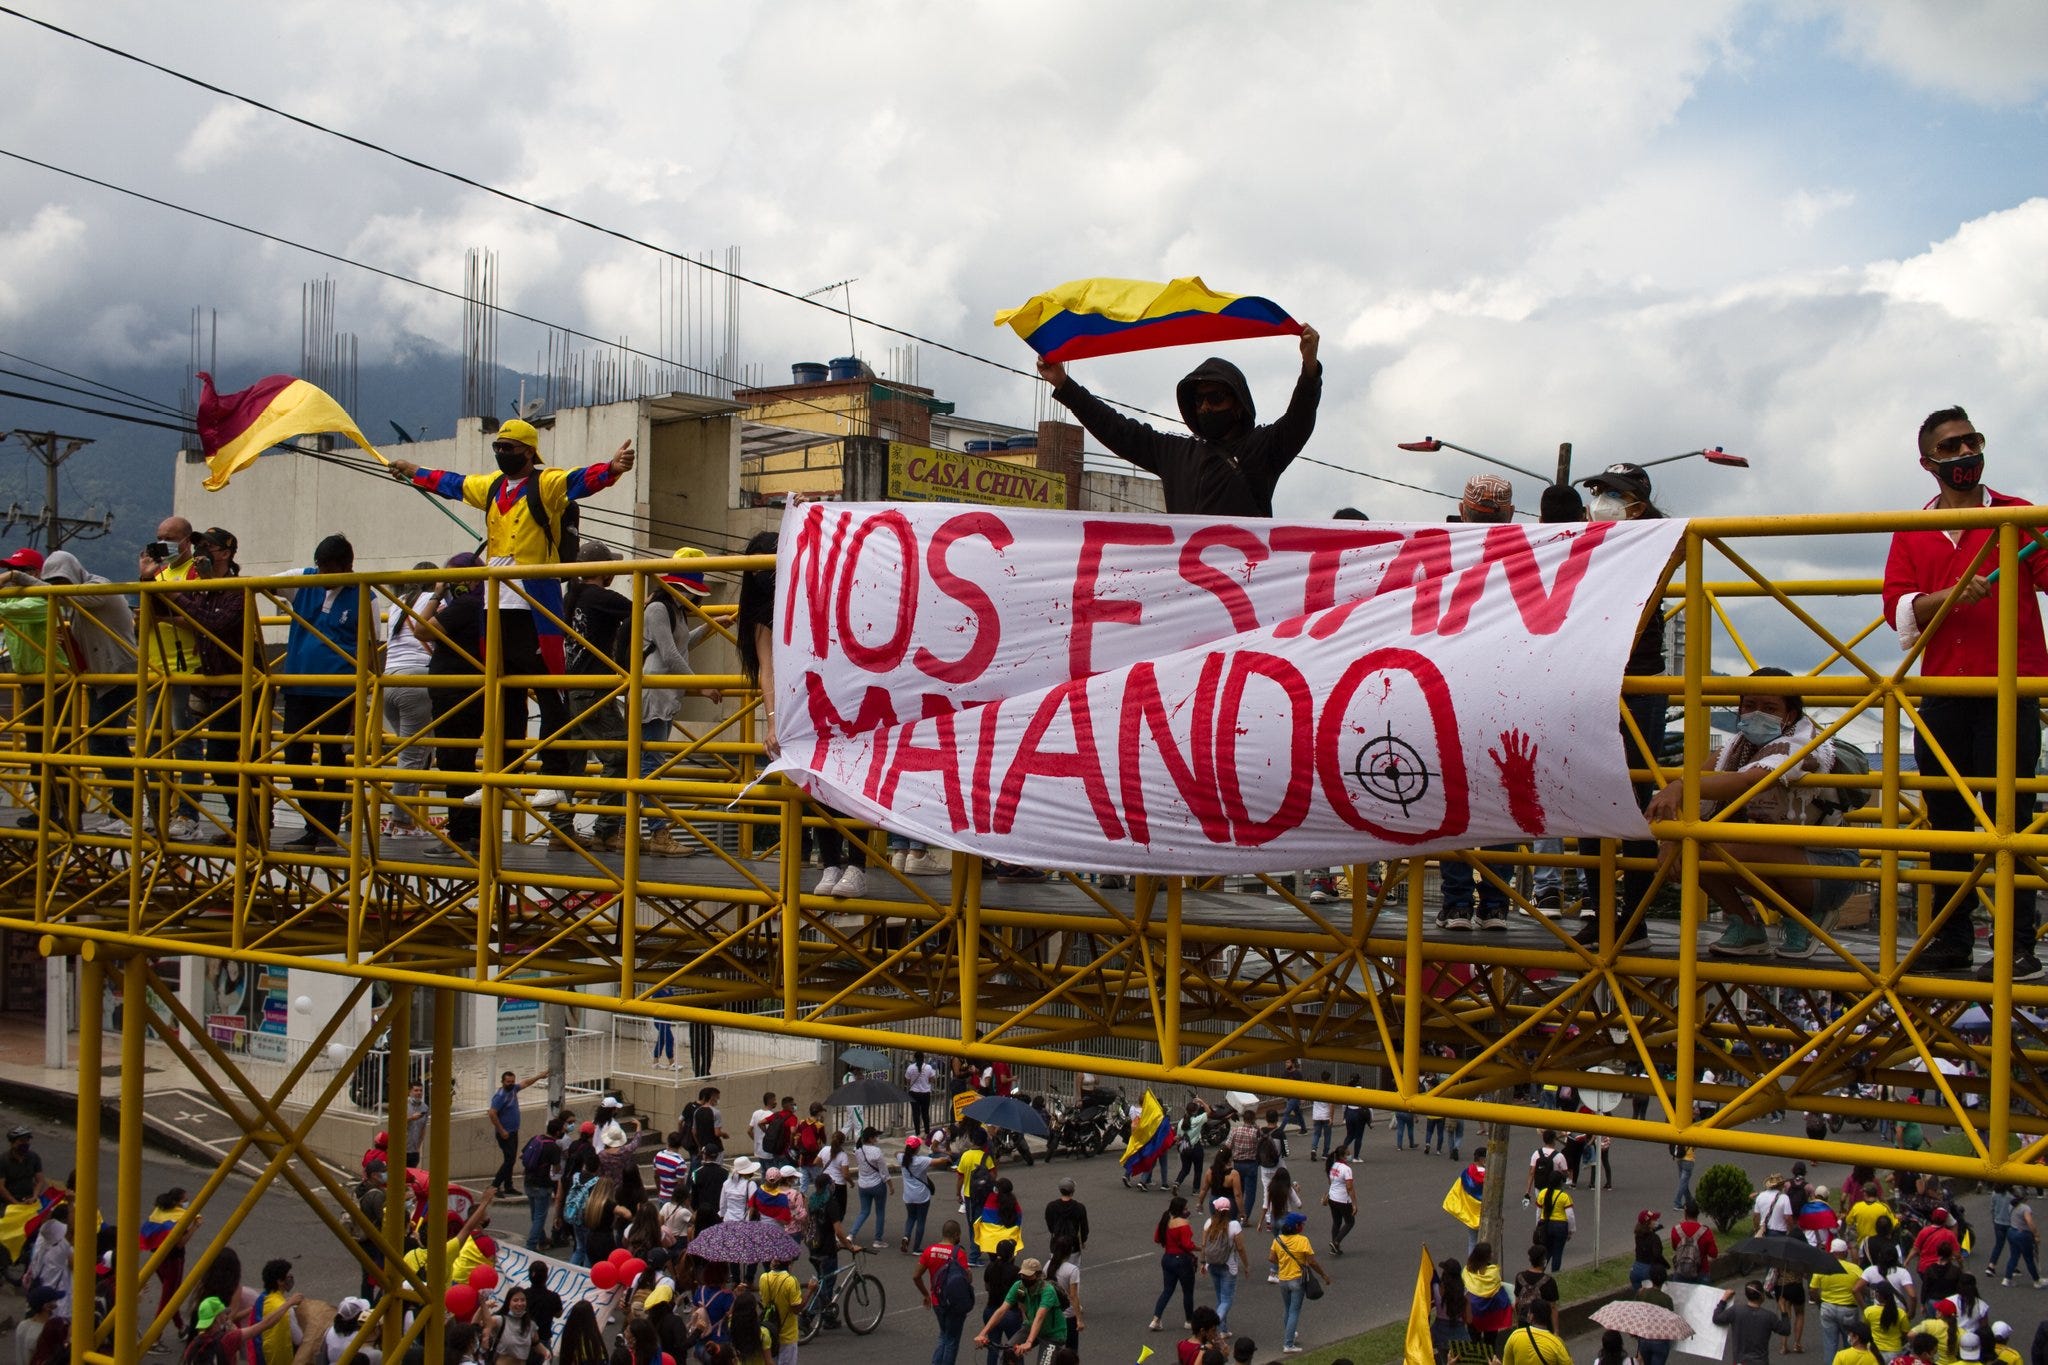 Salvador sedia a maior feira de intercâmbio da América Latina